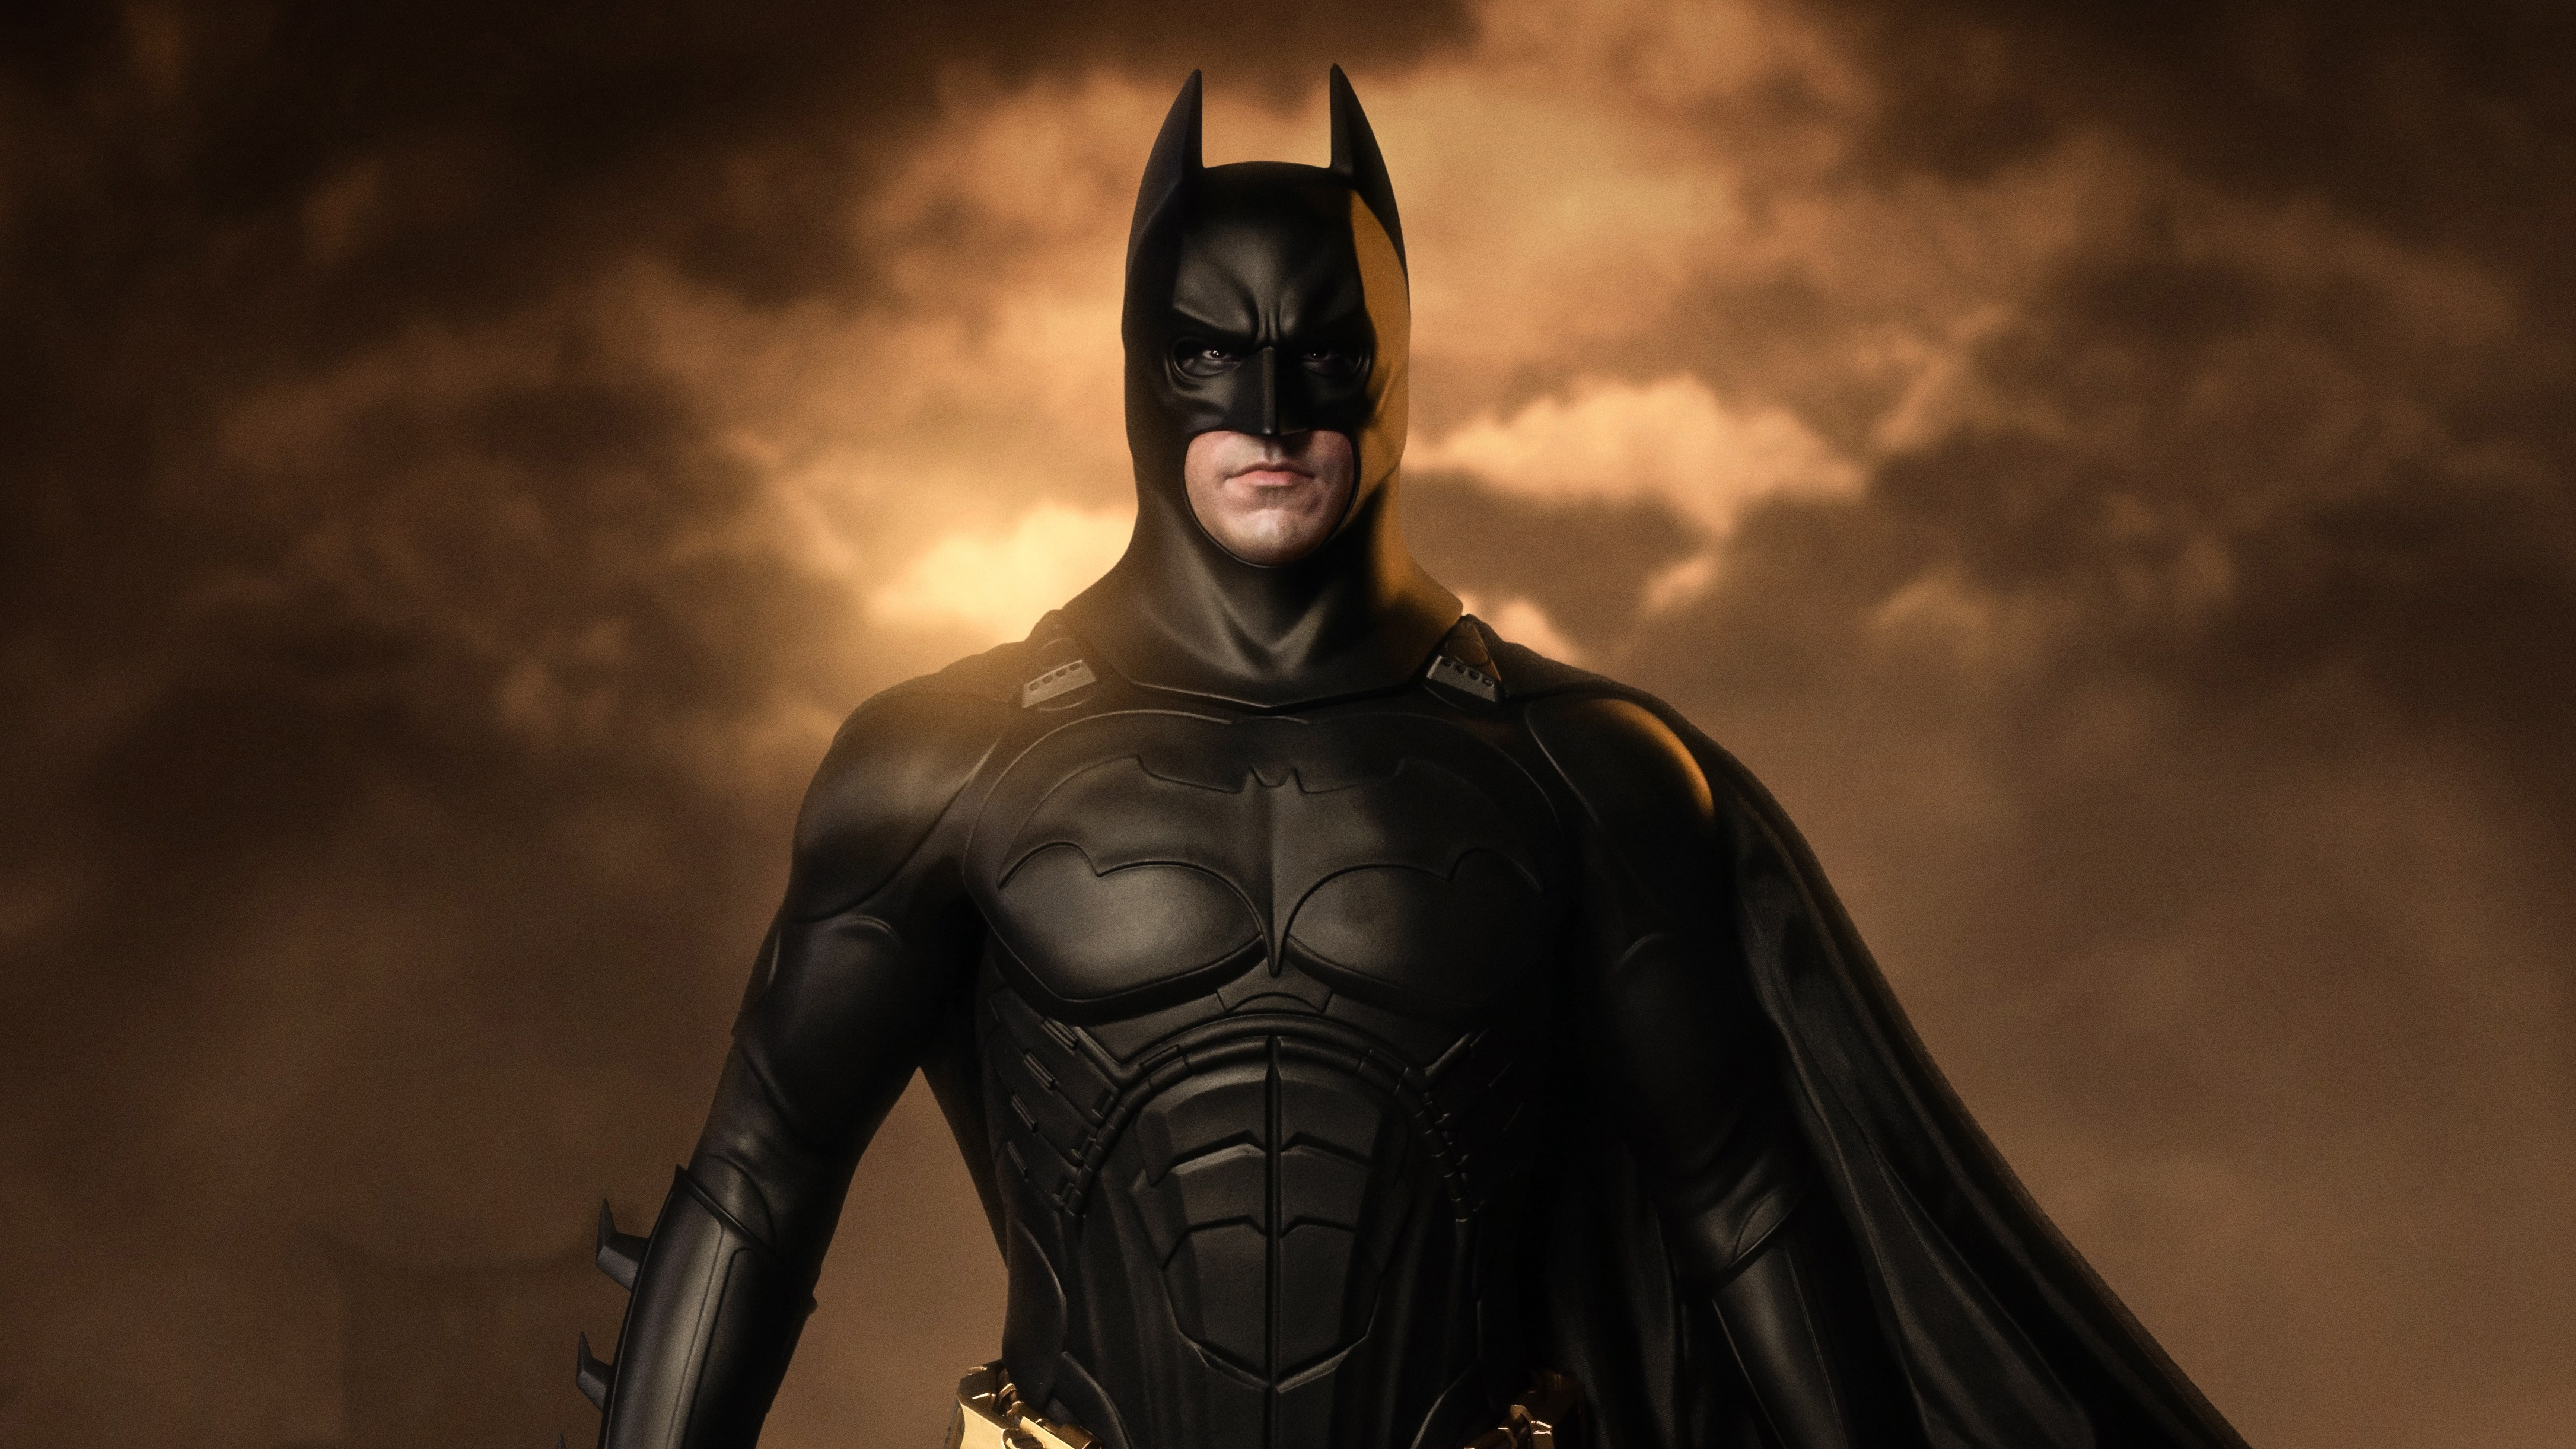 Batman Begins 4k, HD Superheroes, 4k Wallpapers, Images ...